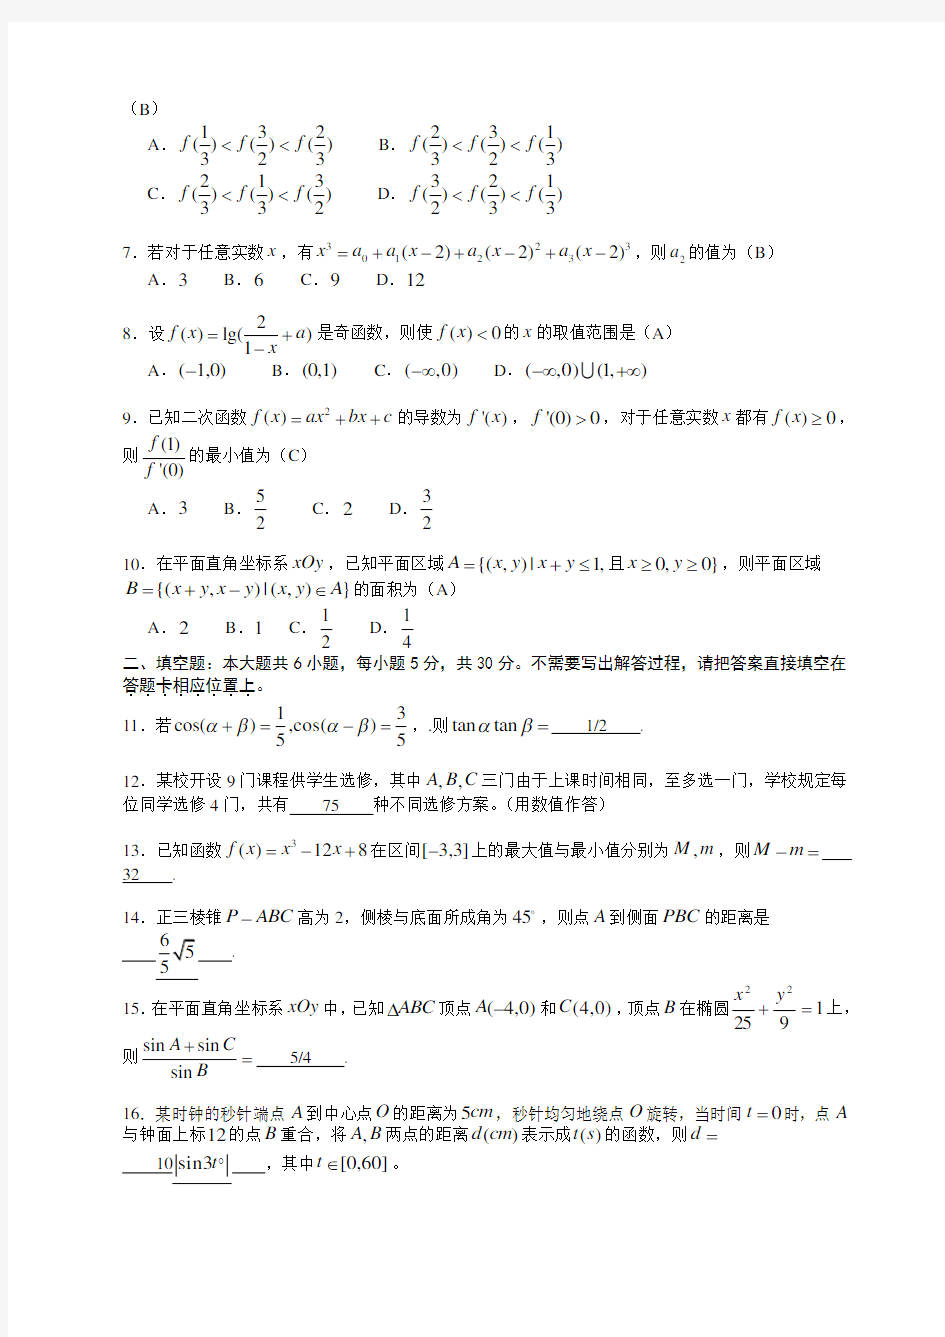 2007年高考.江苏卷.数学试题及详细解答